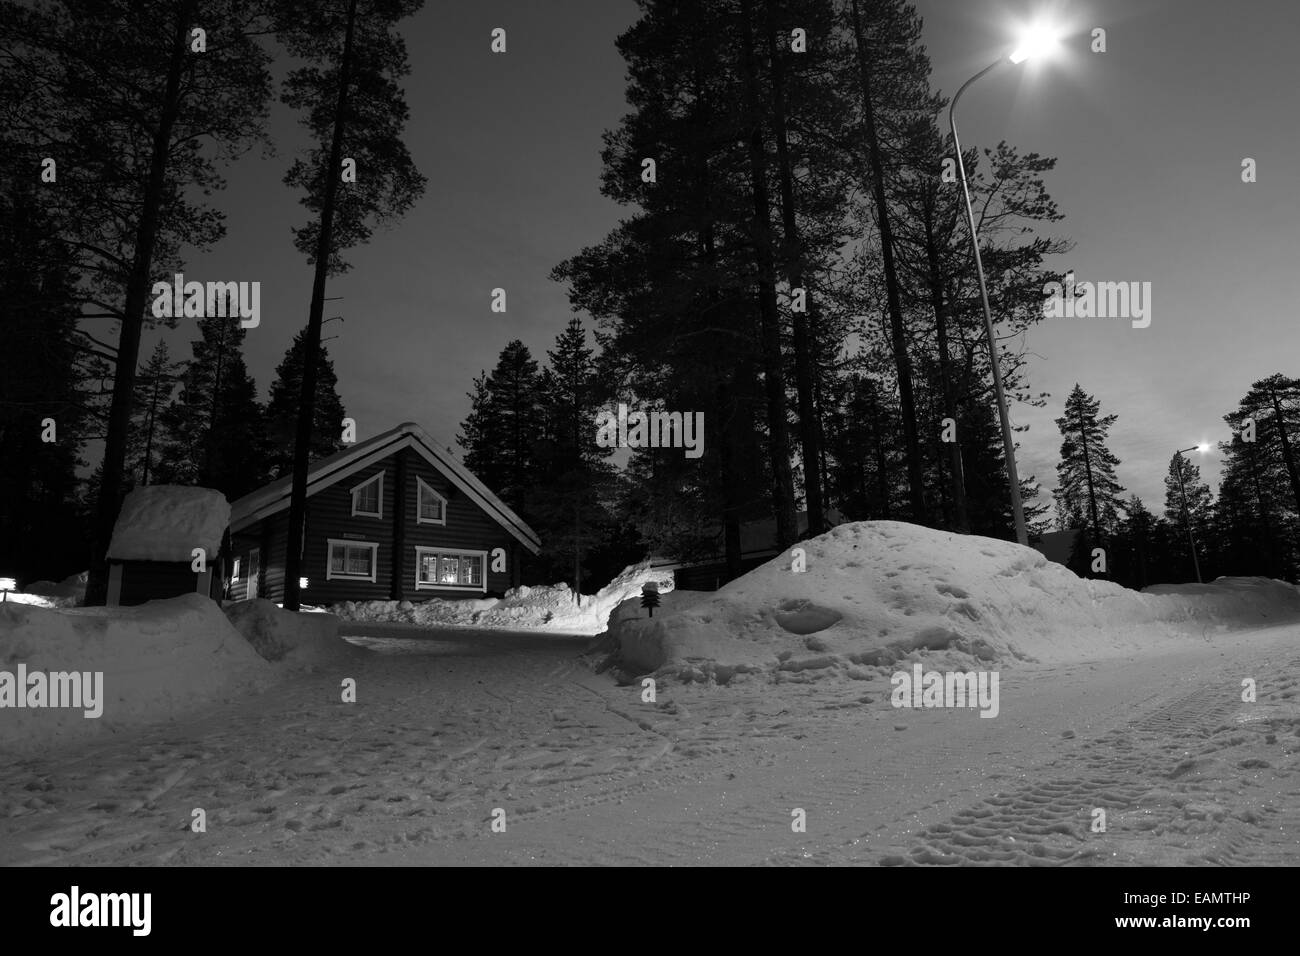 Un paysage enneigé avec une cabine capturés durant la nuit, Yllas Laponie finlandaise Banque D'Images